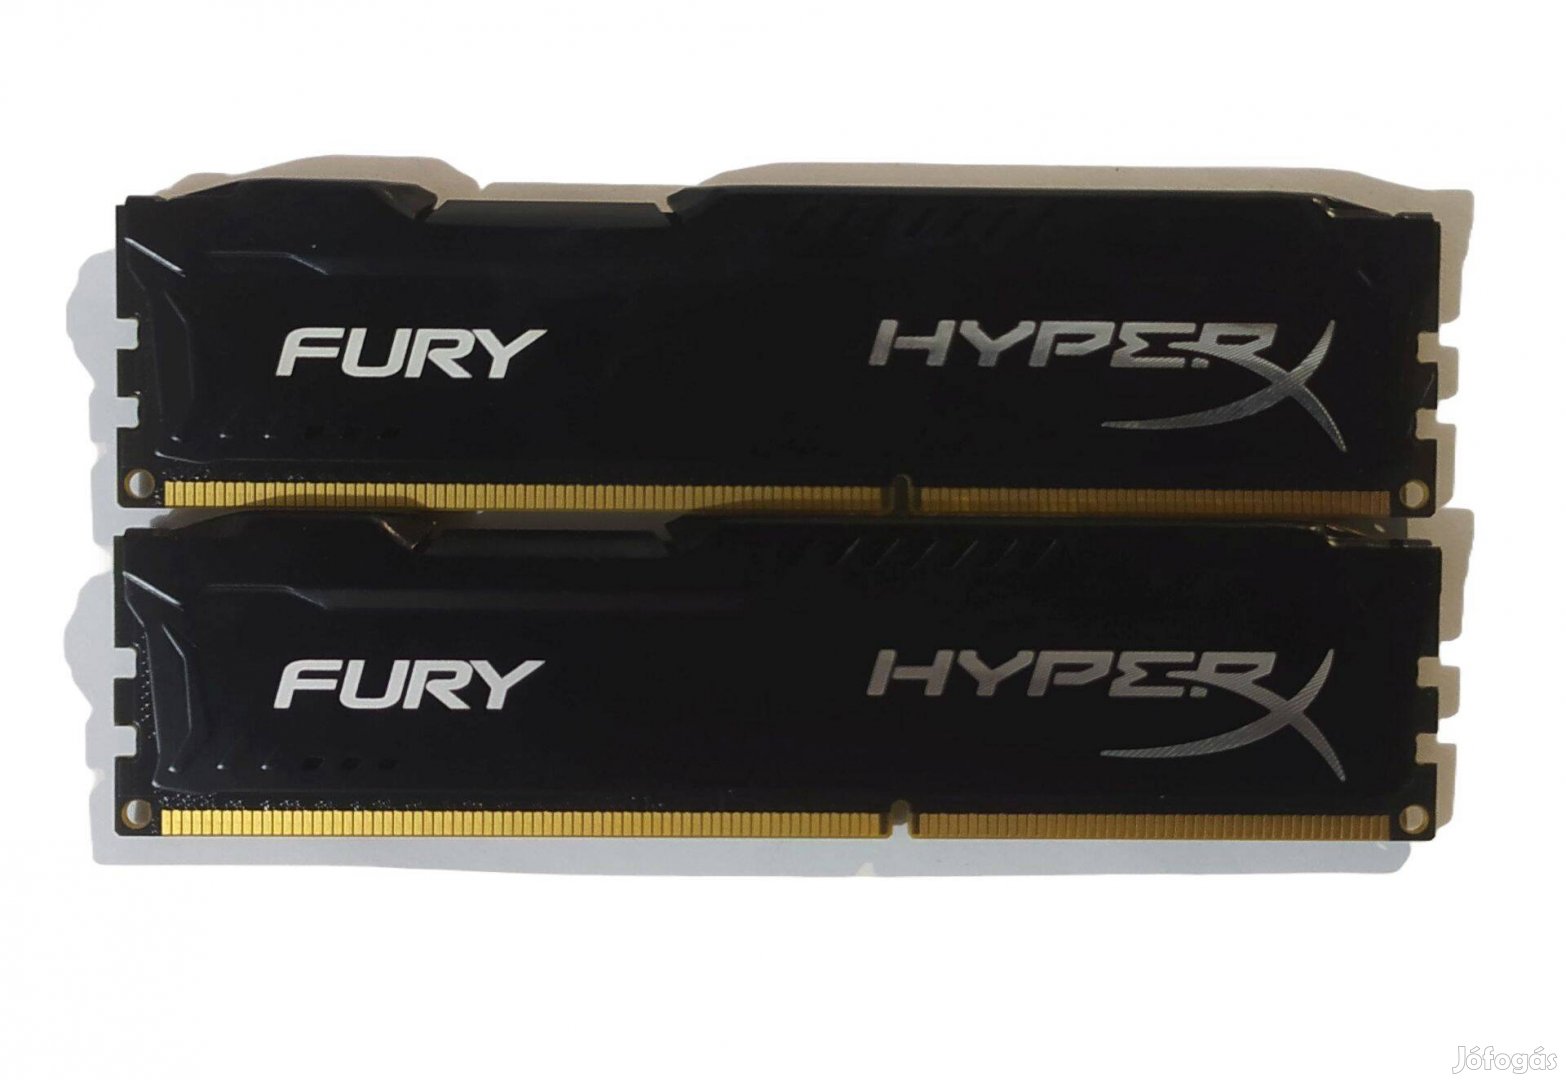 Hyperx Fury 8GB (2x4GB) DDR3 1866MHz cl10 memória